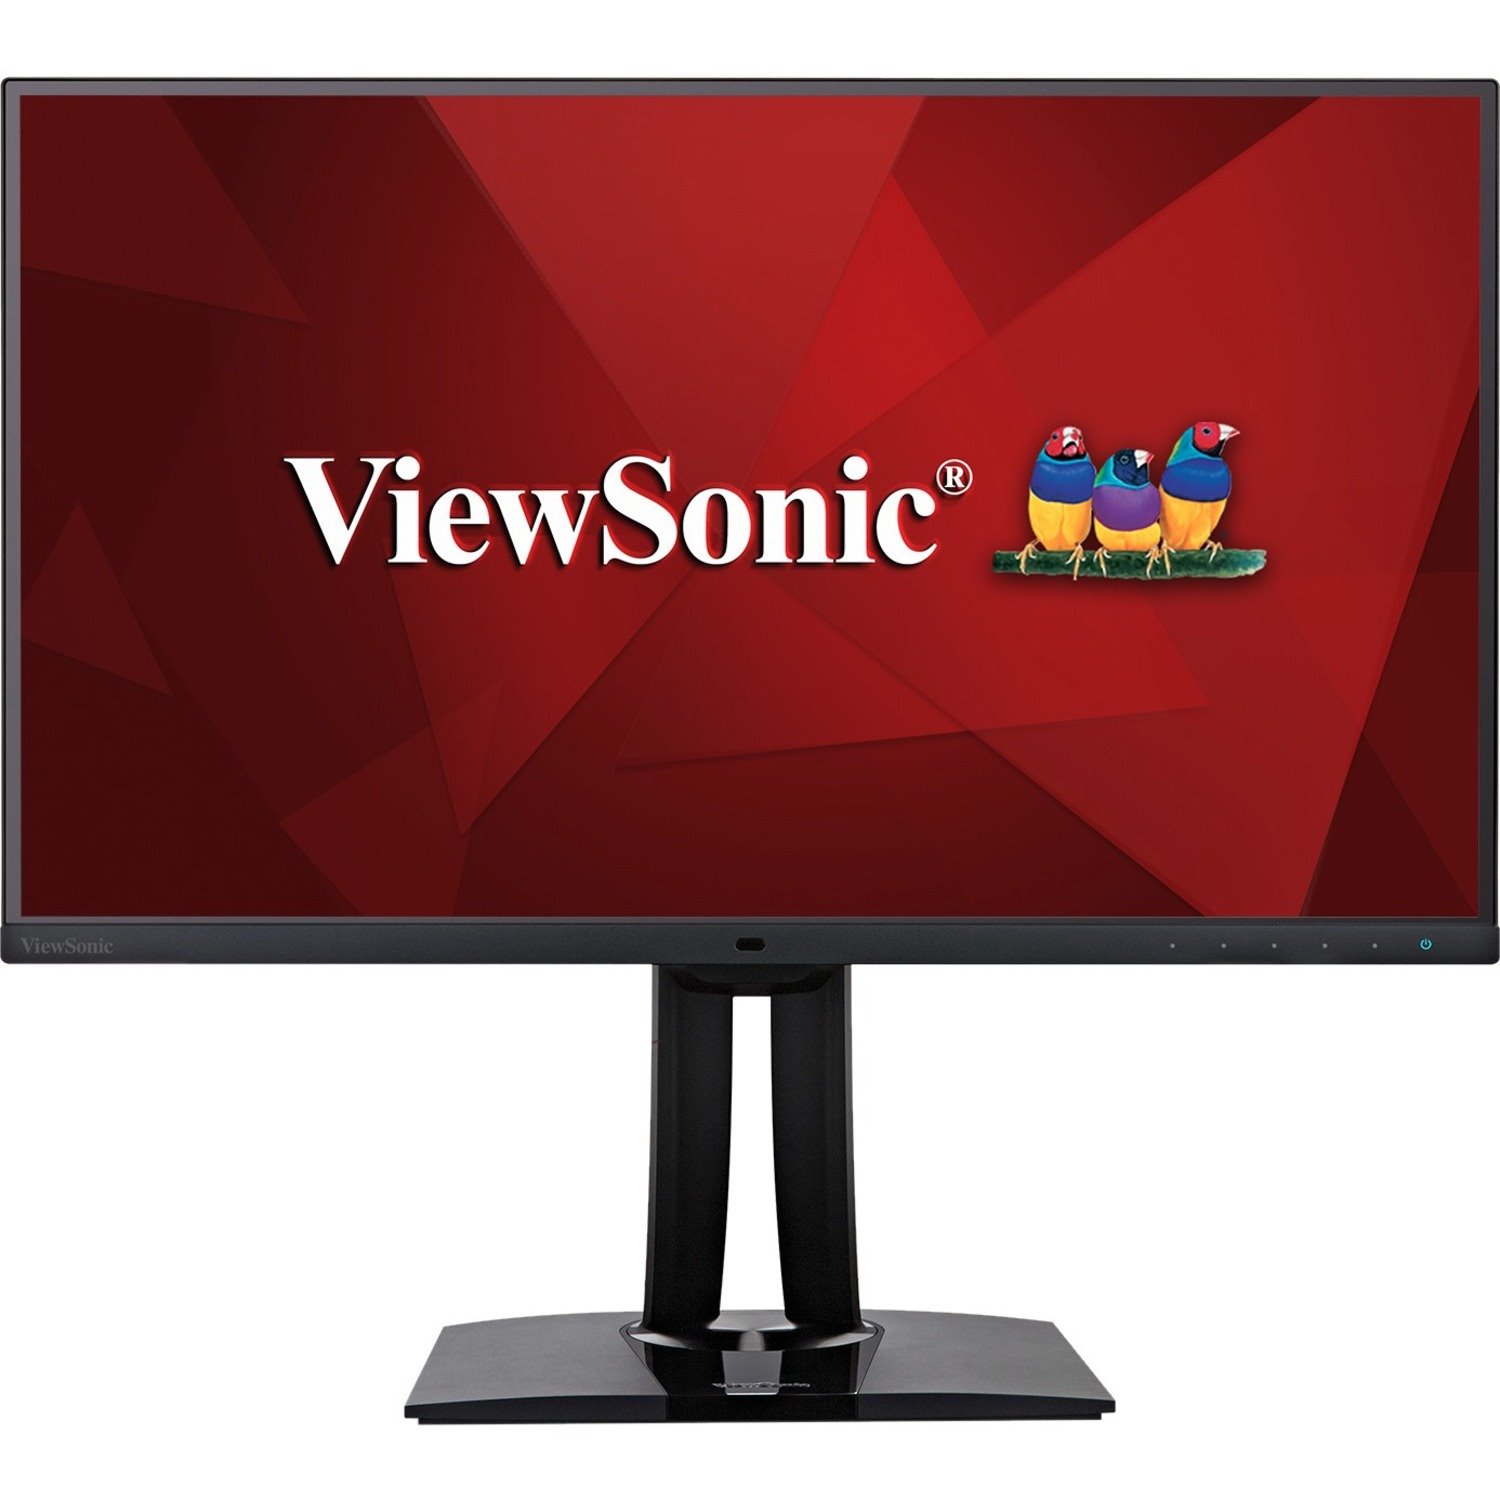 ViewSonic VP2785-4K 27" Class 4K UHD LCD Monitor - 16:9 - Black